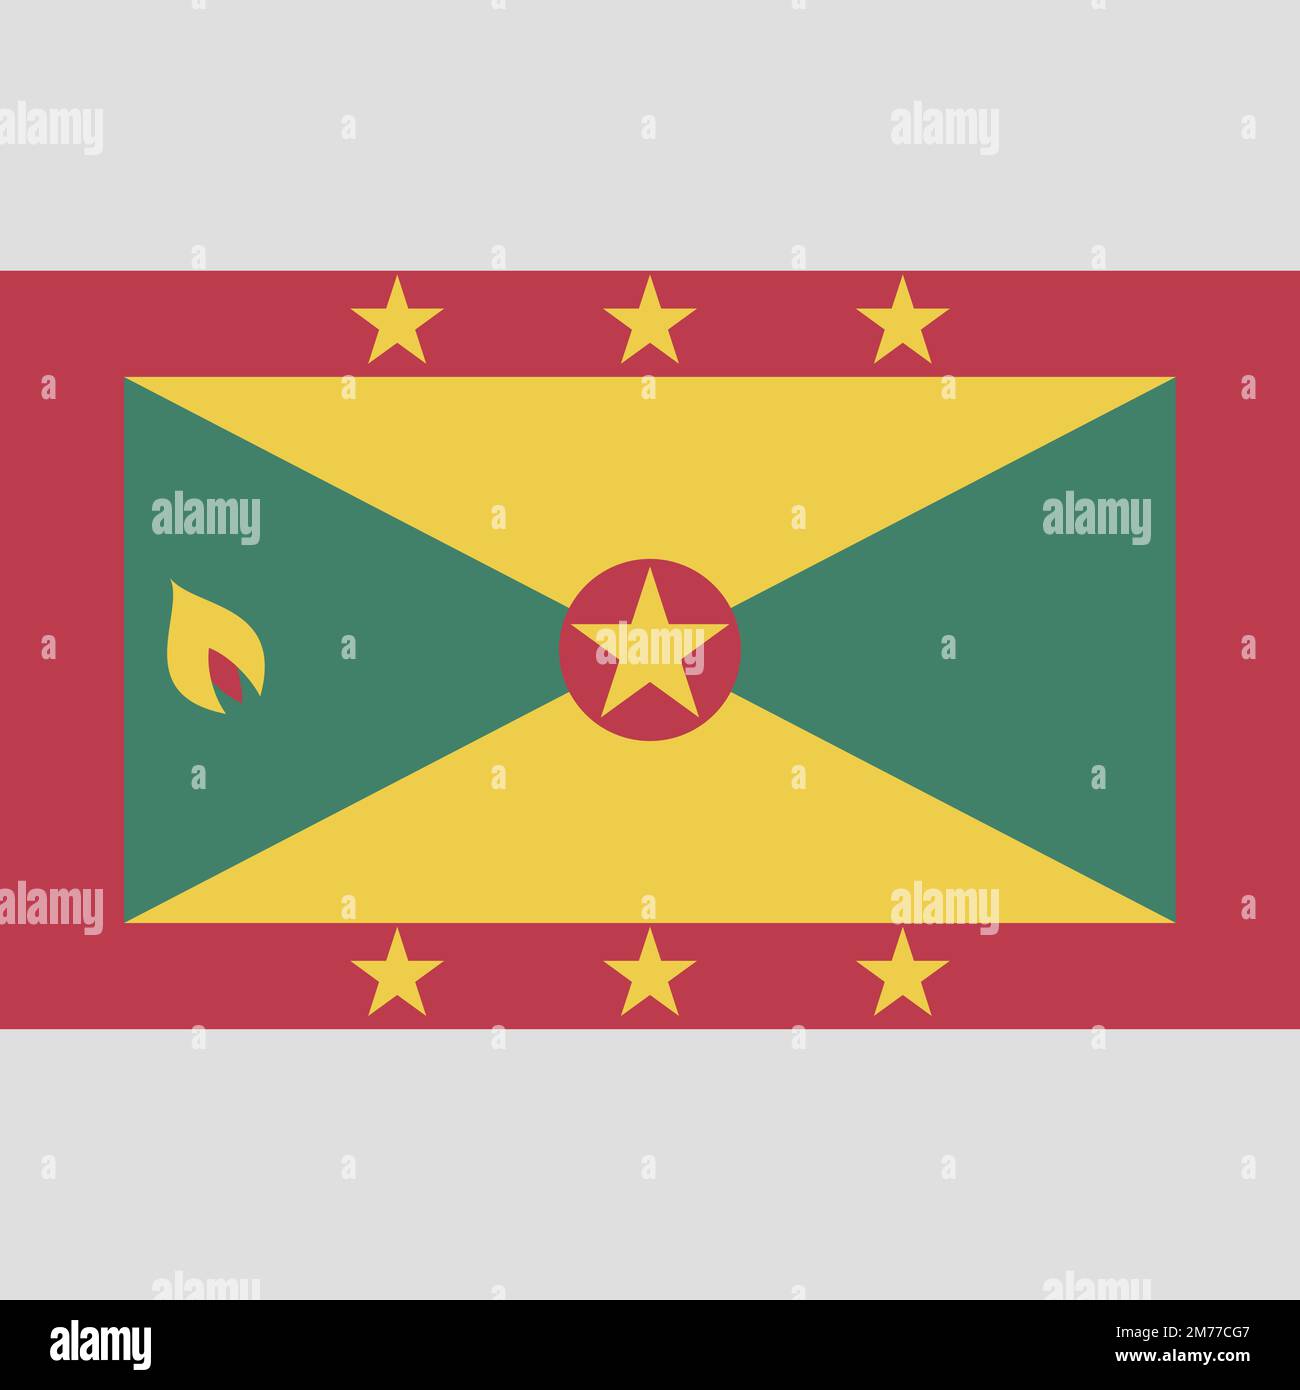 Grenada-Flagge mit offiziellen Farben und einem Seitenverhältnis von 3:5. Abbildung eines flachen Vektors. Stock Vektor